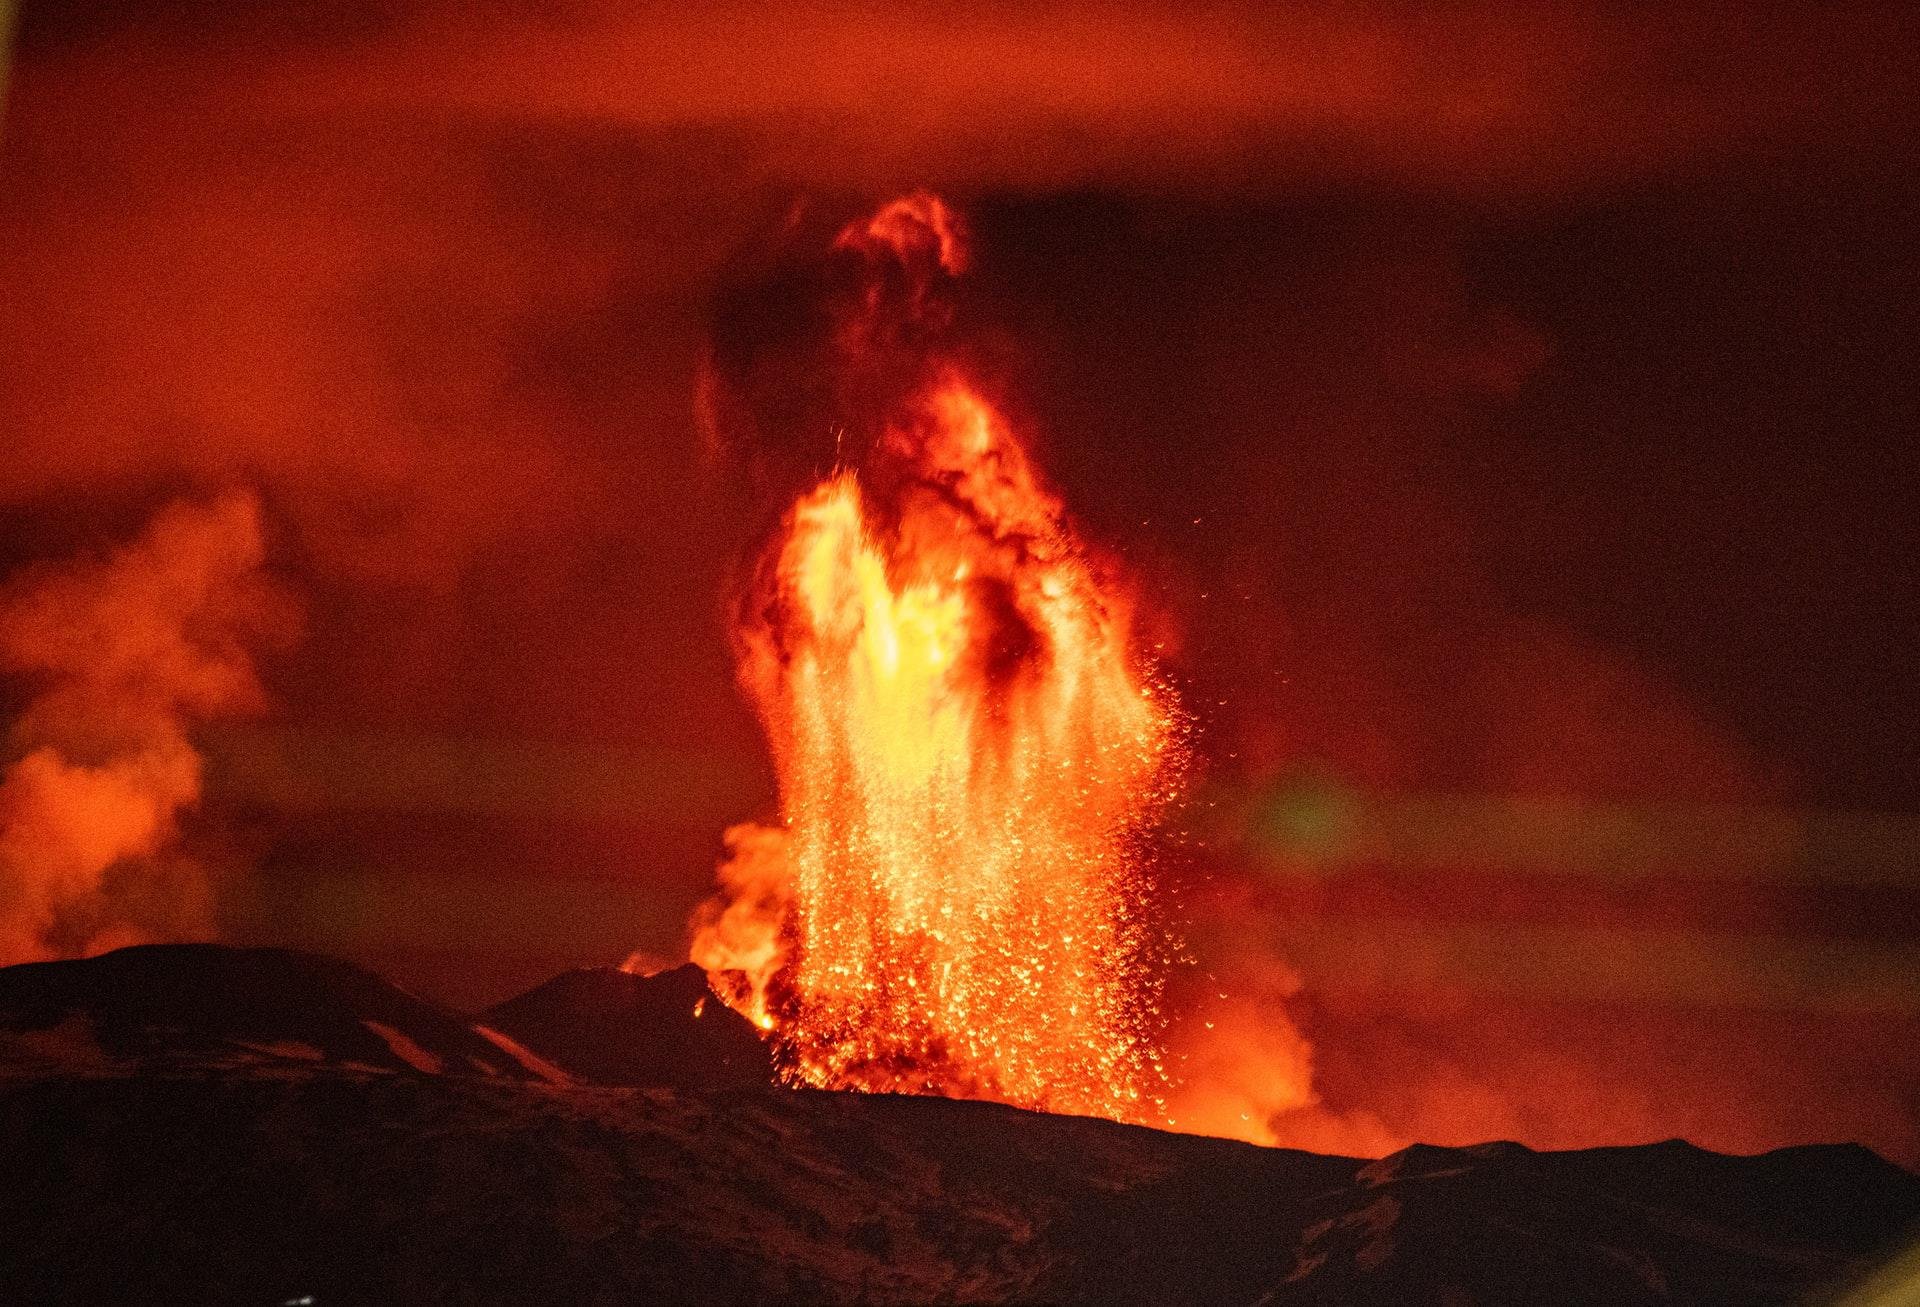 Vulcões são os cones formados pela erupção de magma do interior da Terra na forma de lava (Fonte: Unplash/Piermanuele Sberni)